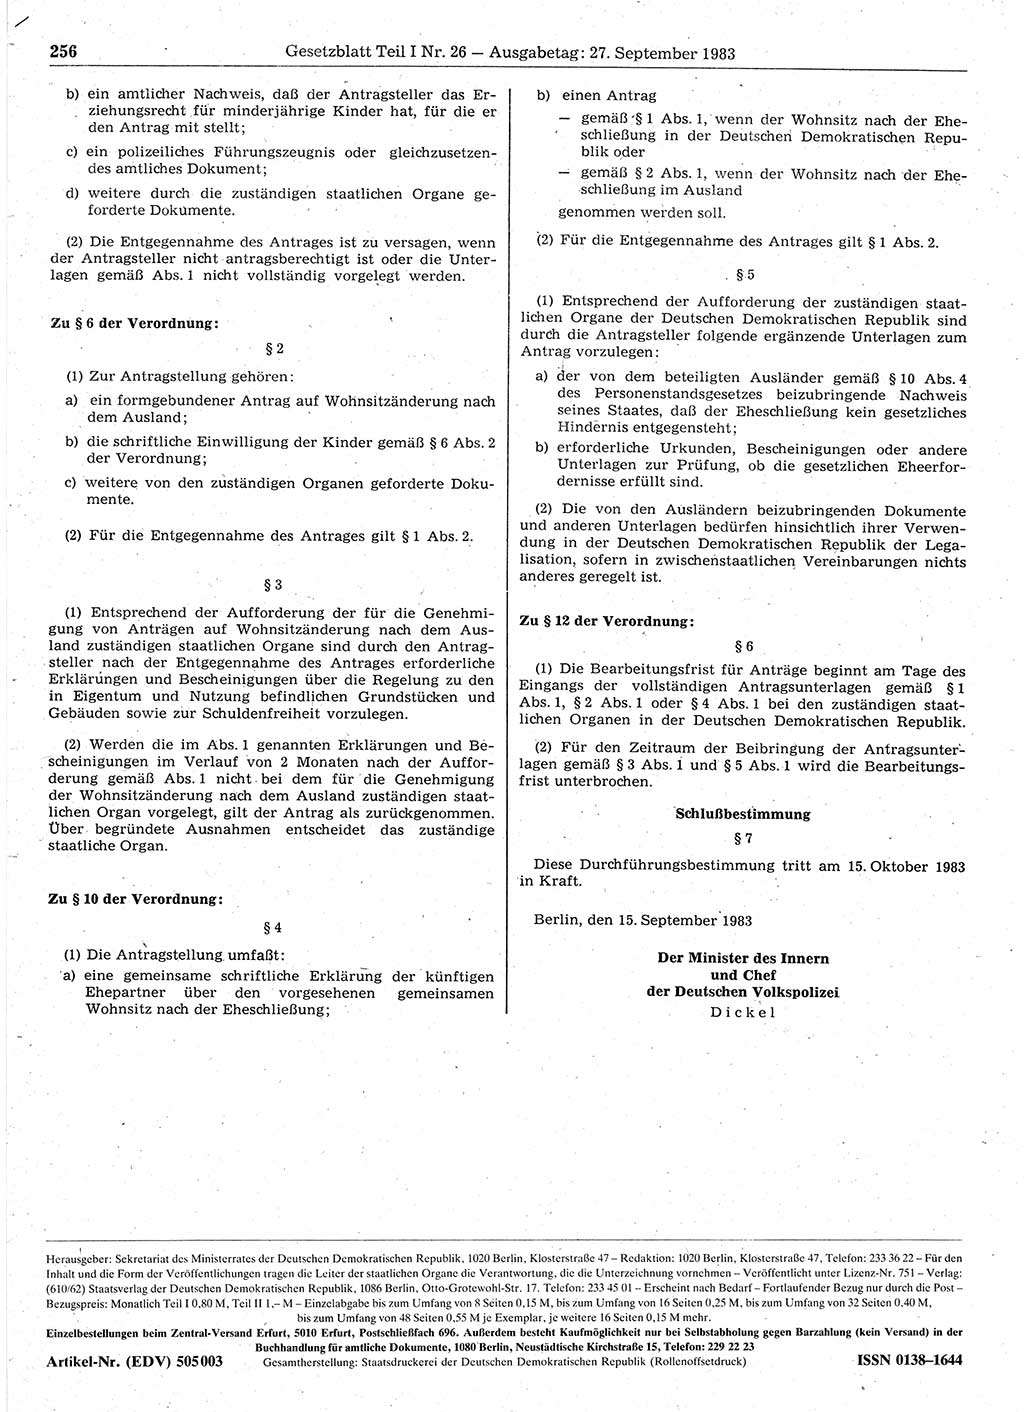 Gesetzblatt (GBl.) der Deutschen Demokratischen Republik (DDR) Teil Ⅰ 1983, Seite 256 (GBl. DDR Ⅰ 1983, S. 256)